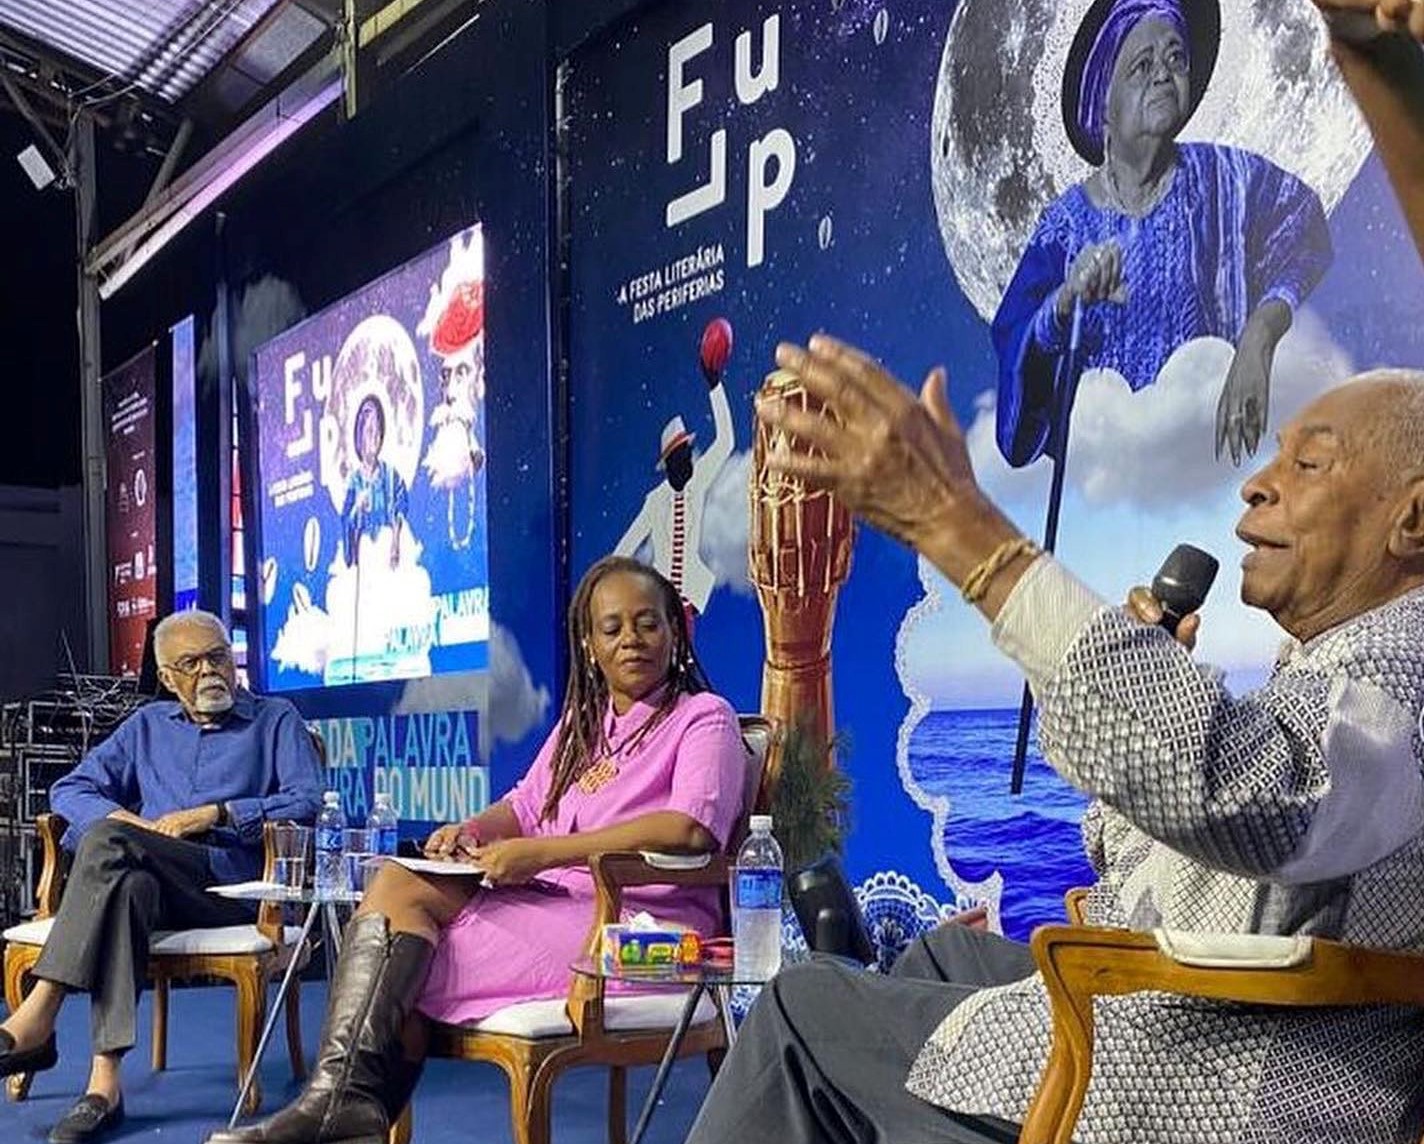 Gilberto Gil, Eliana Alves Cruz e Haroldo Costa: ancestralidade e pluralidade na Flup (Foto: Reprodução / Instagram)